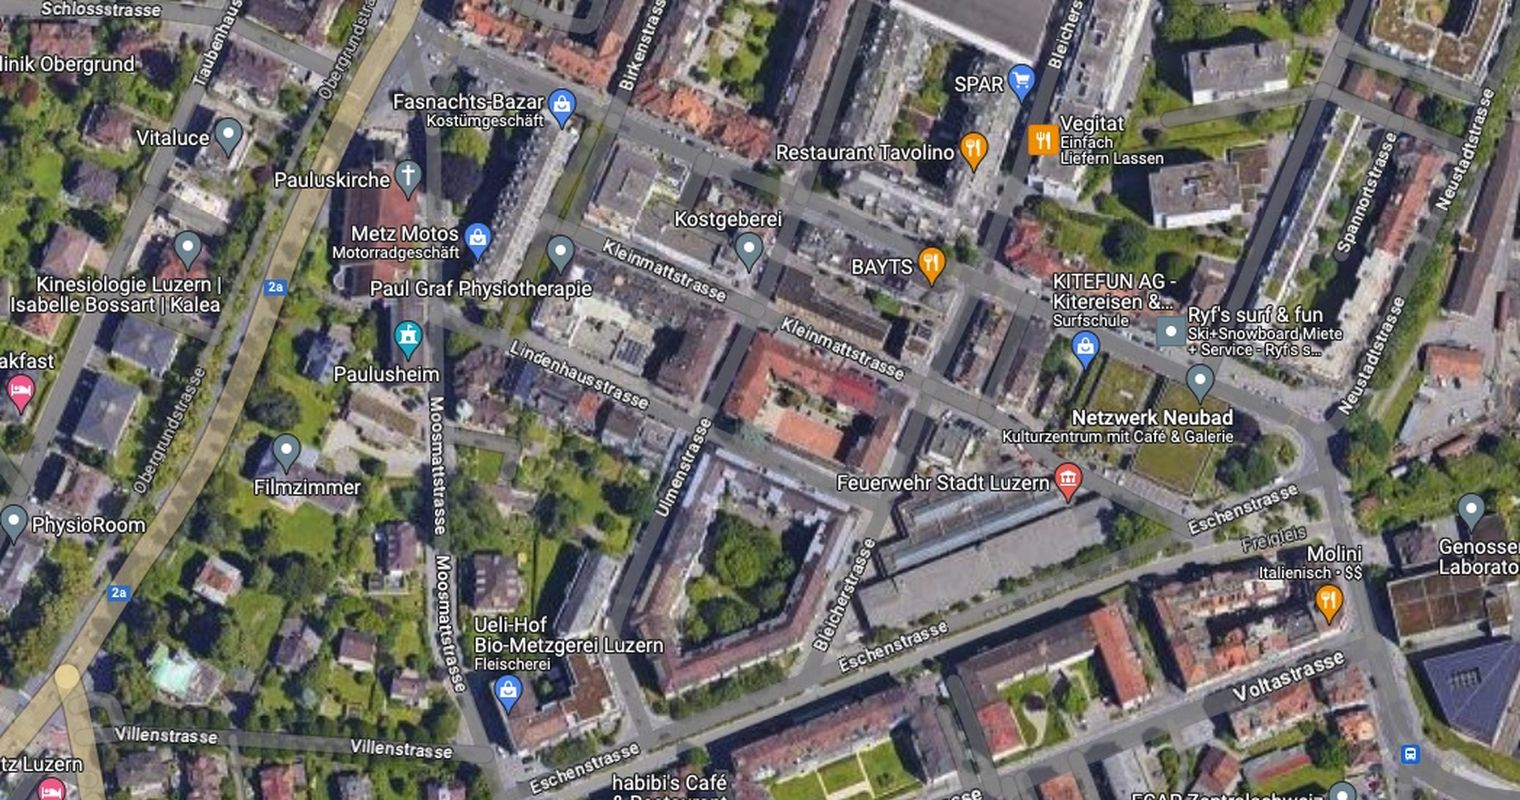 Stadt Luzern prüft Verkehrsregime aus Barcelona beim Neubad